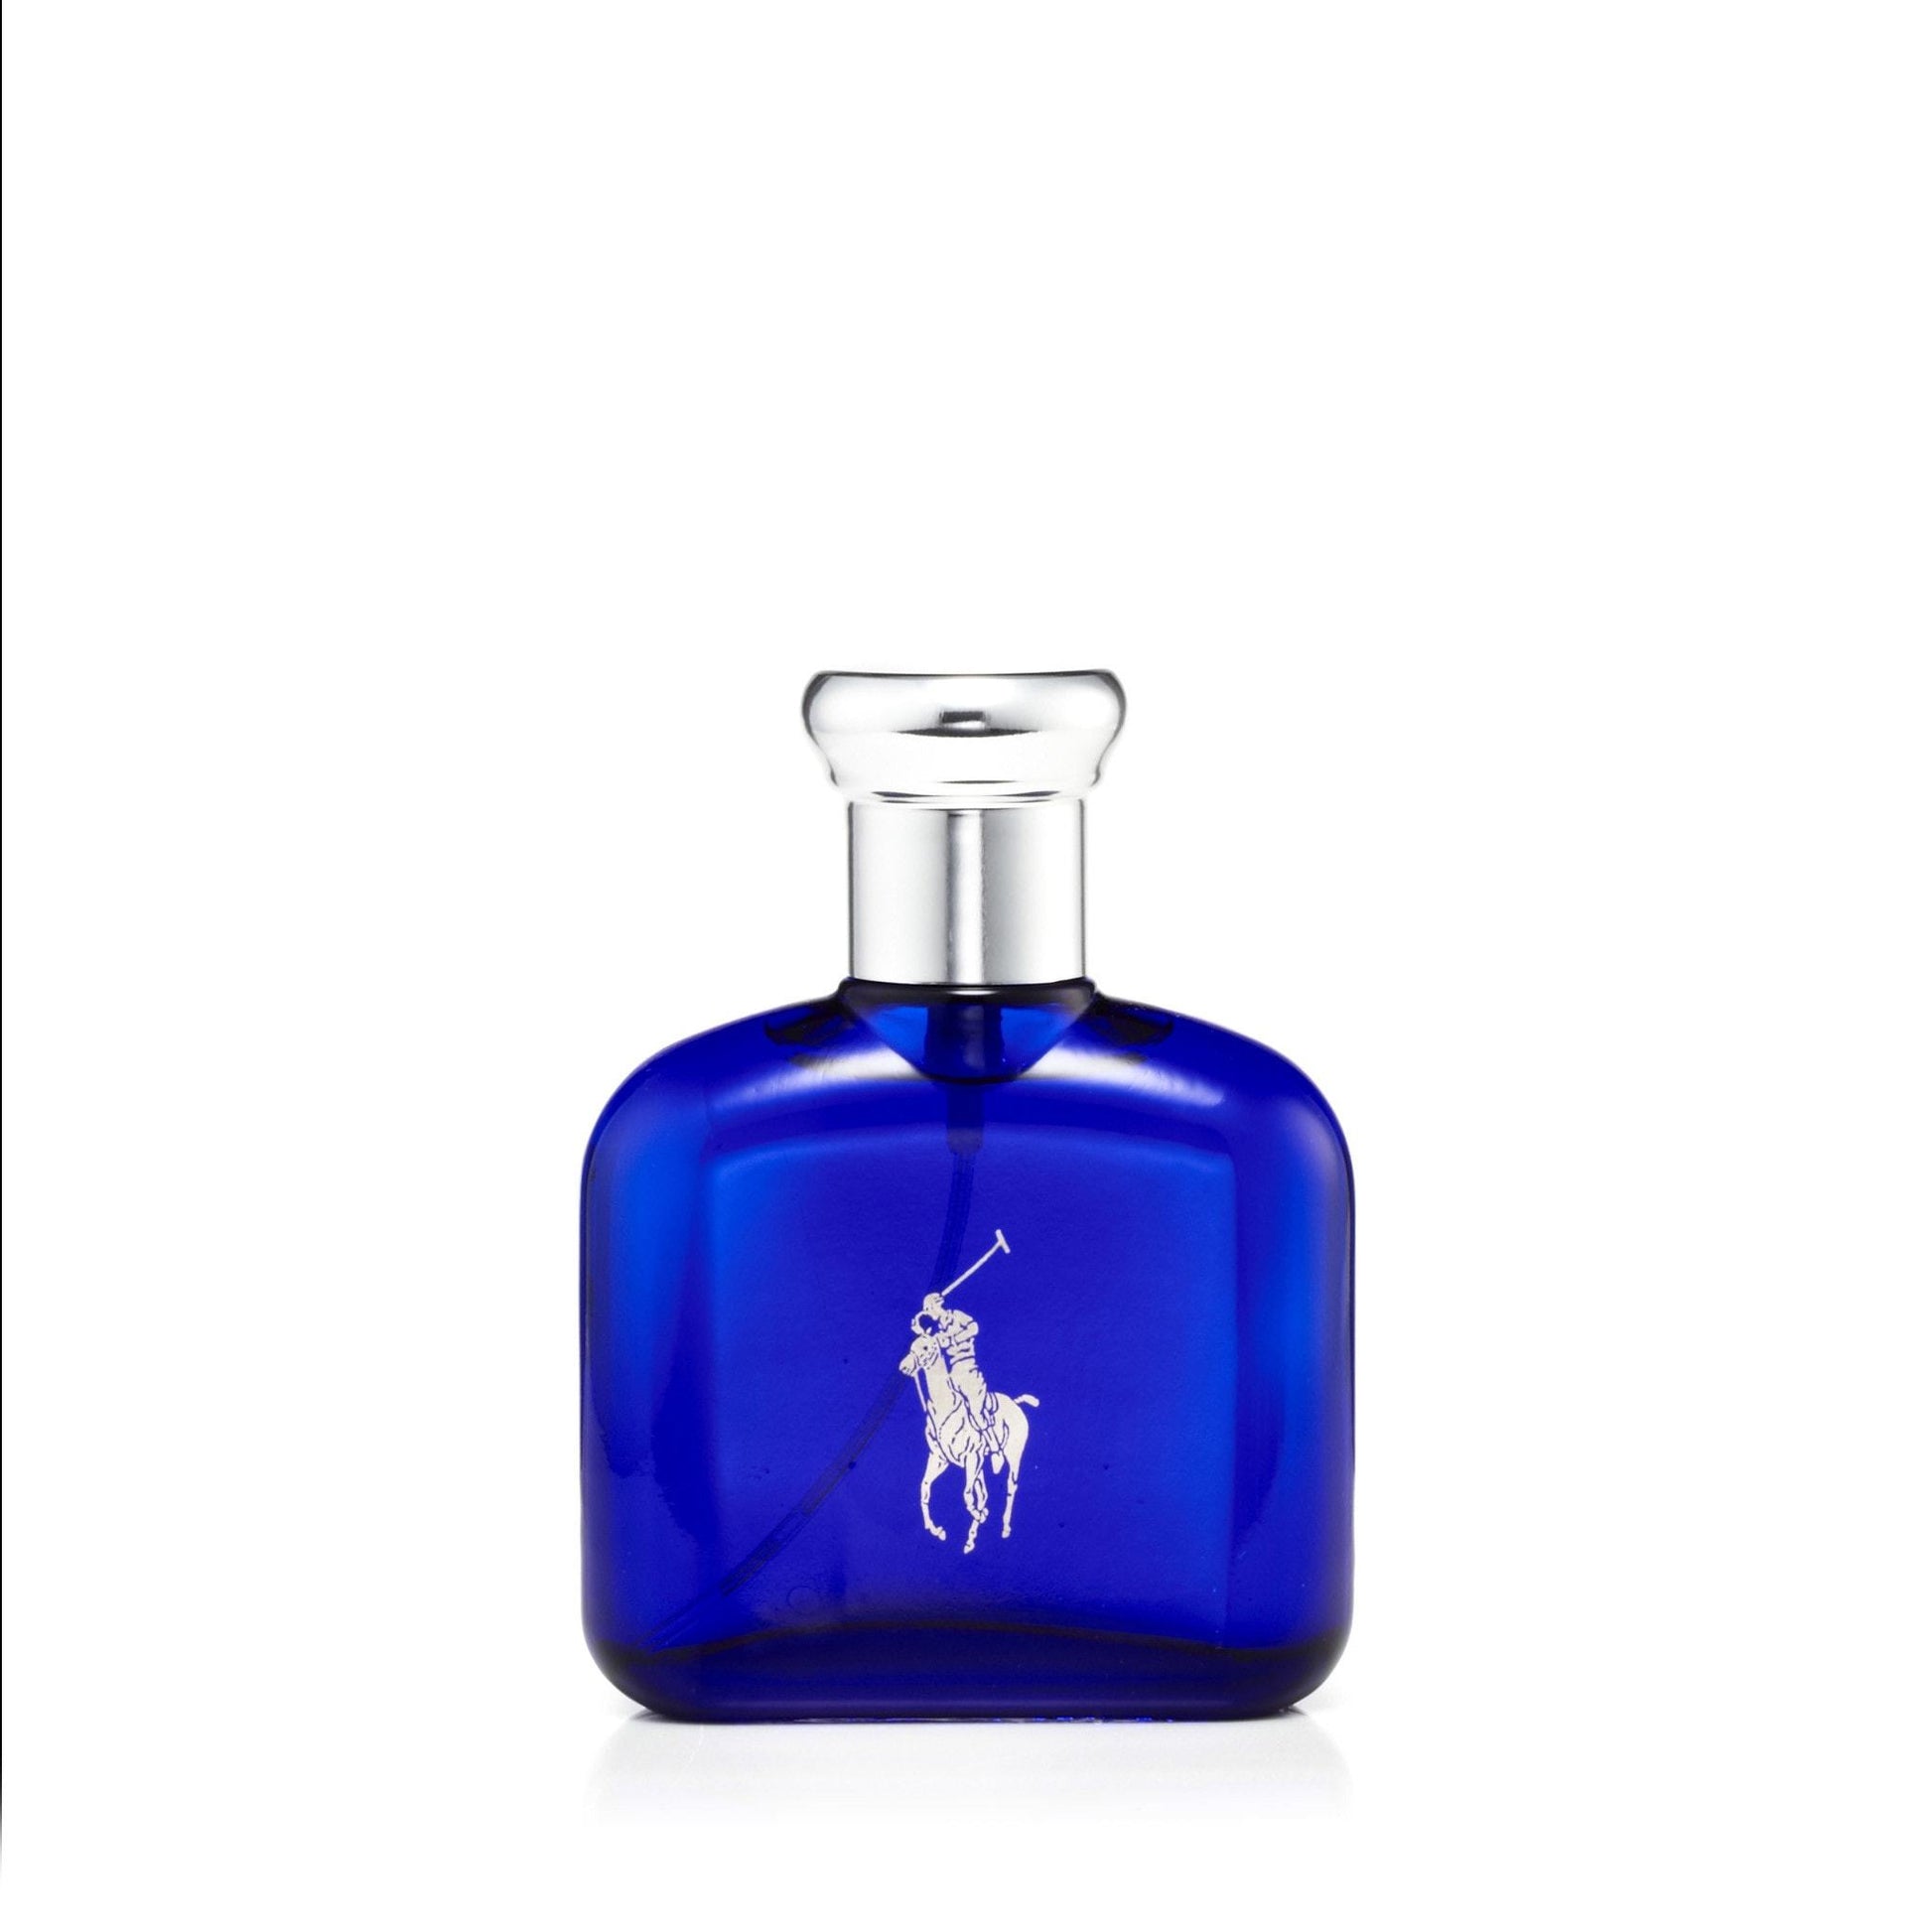 Polo Blue Eau de Toilette Spray for Men by Ralph Lauren, Product image 4